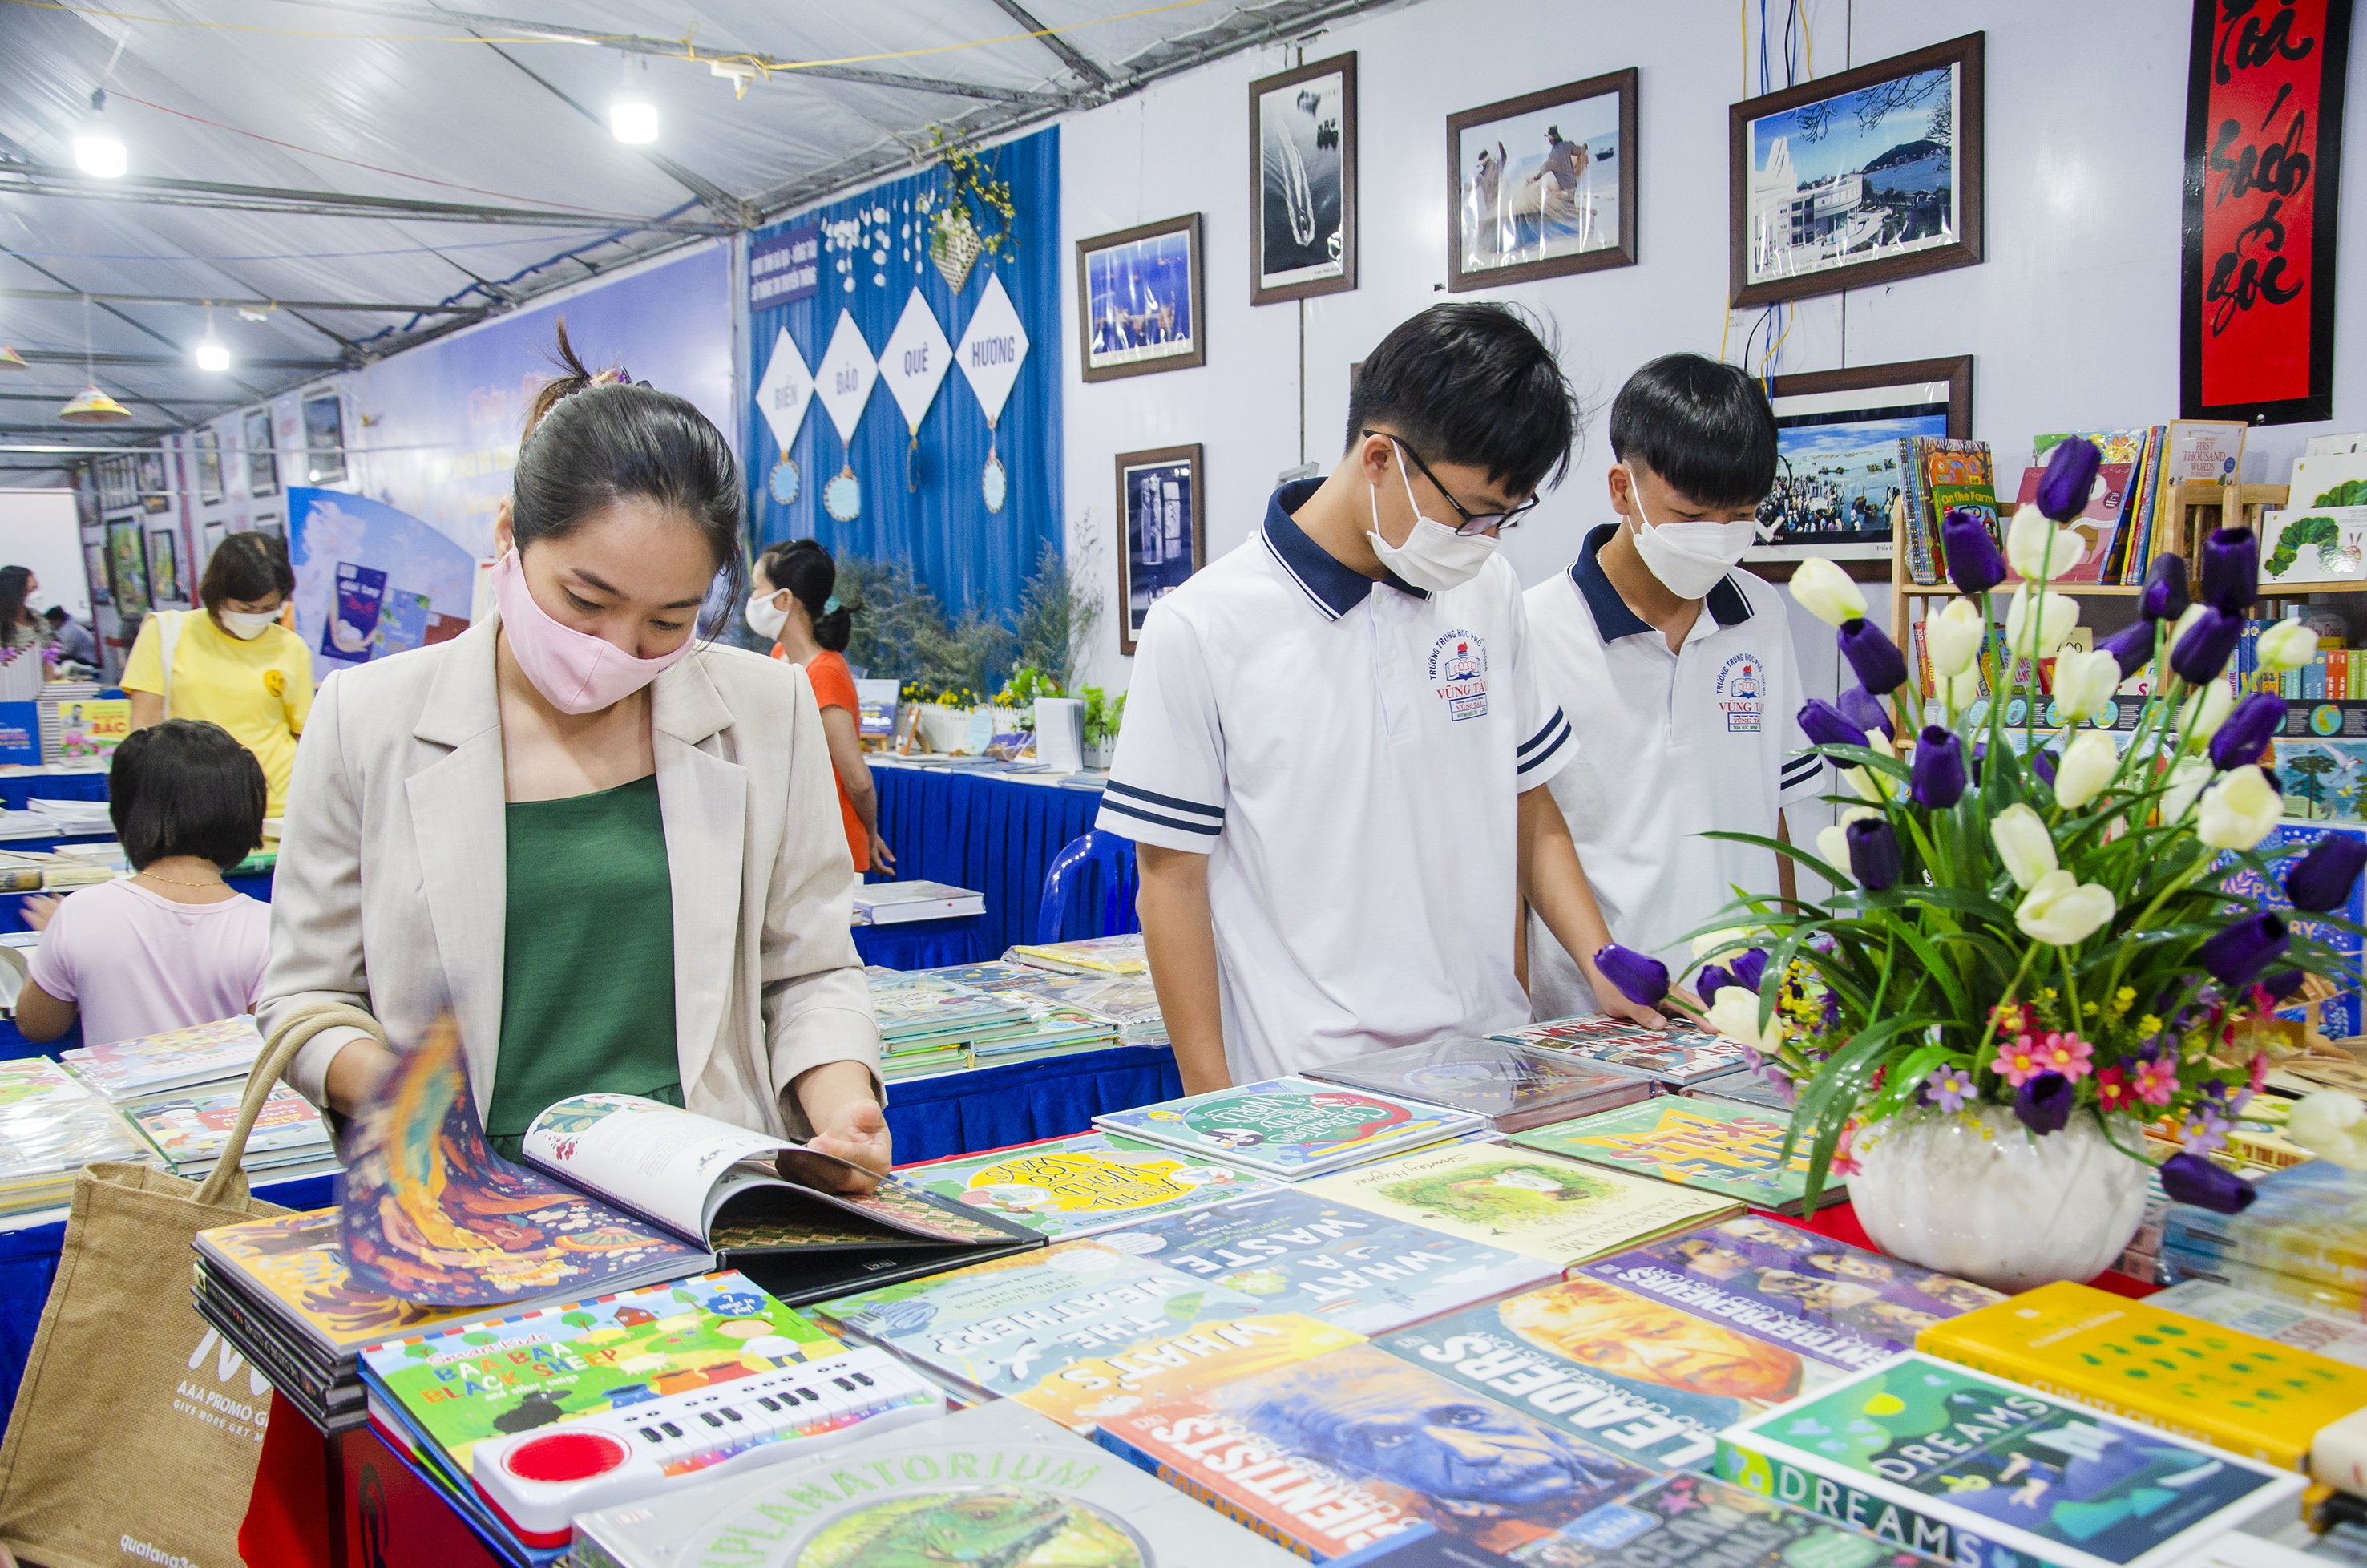 Khu vực triển lãm, hội chợ sách với hơn 1.500 bản sách có nội dung phong phú, đa dạng ở nhiều lĩnh vực.